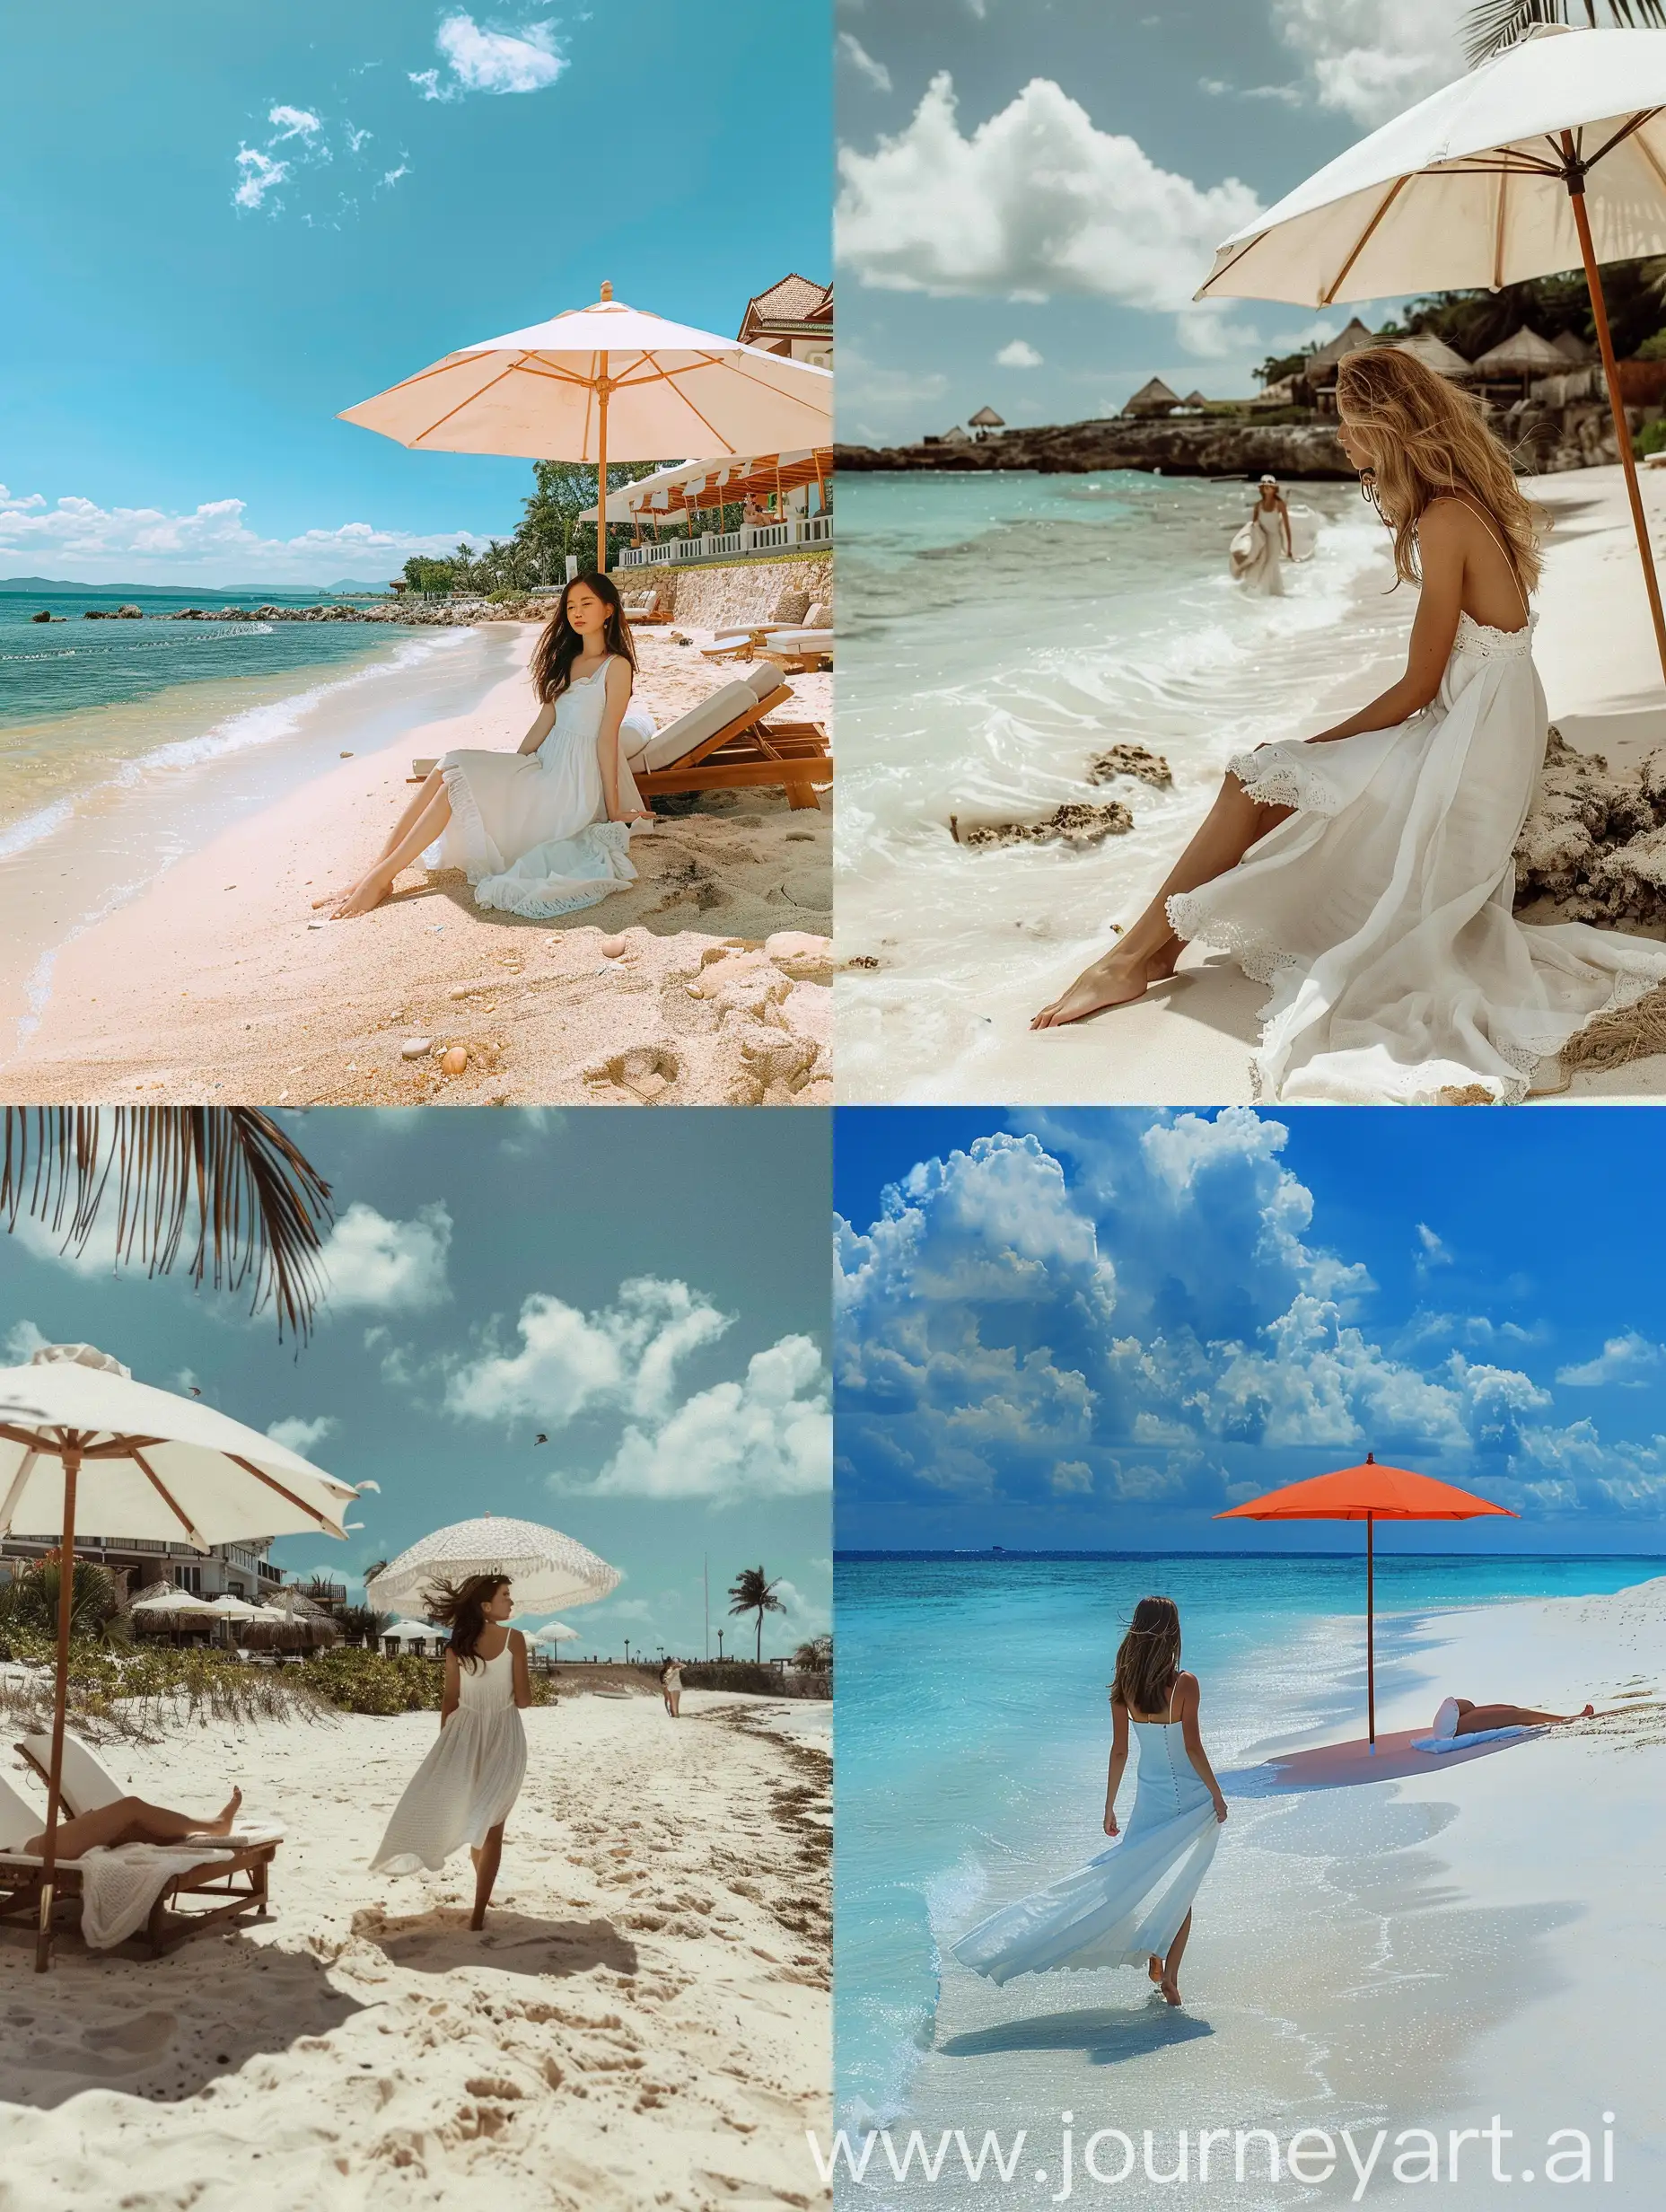 Scenic-Beachside-Relaxation-Girl-in-White-Dress-Enjoying-the-Shoreline